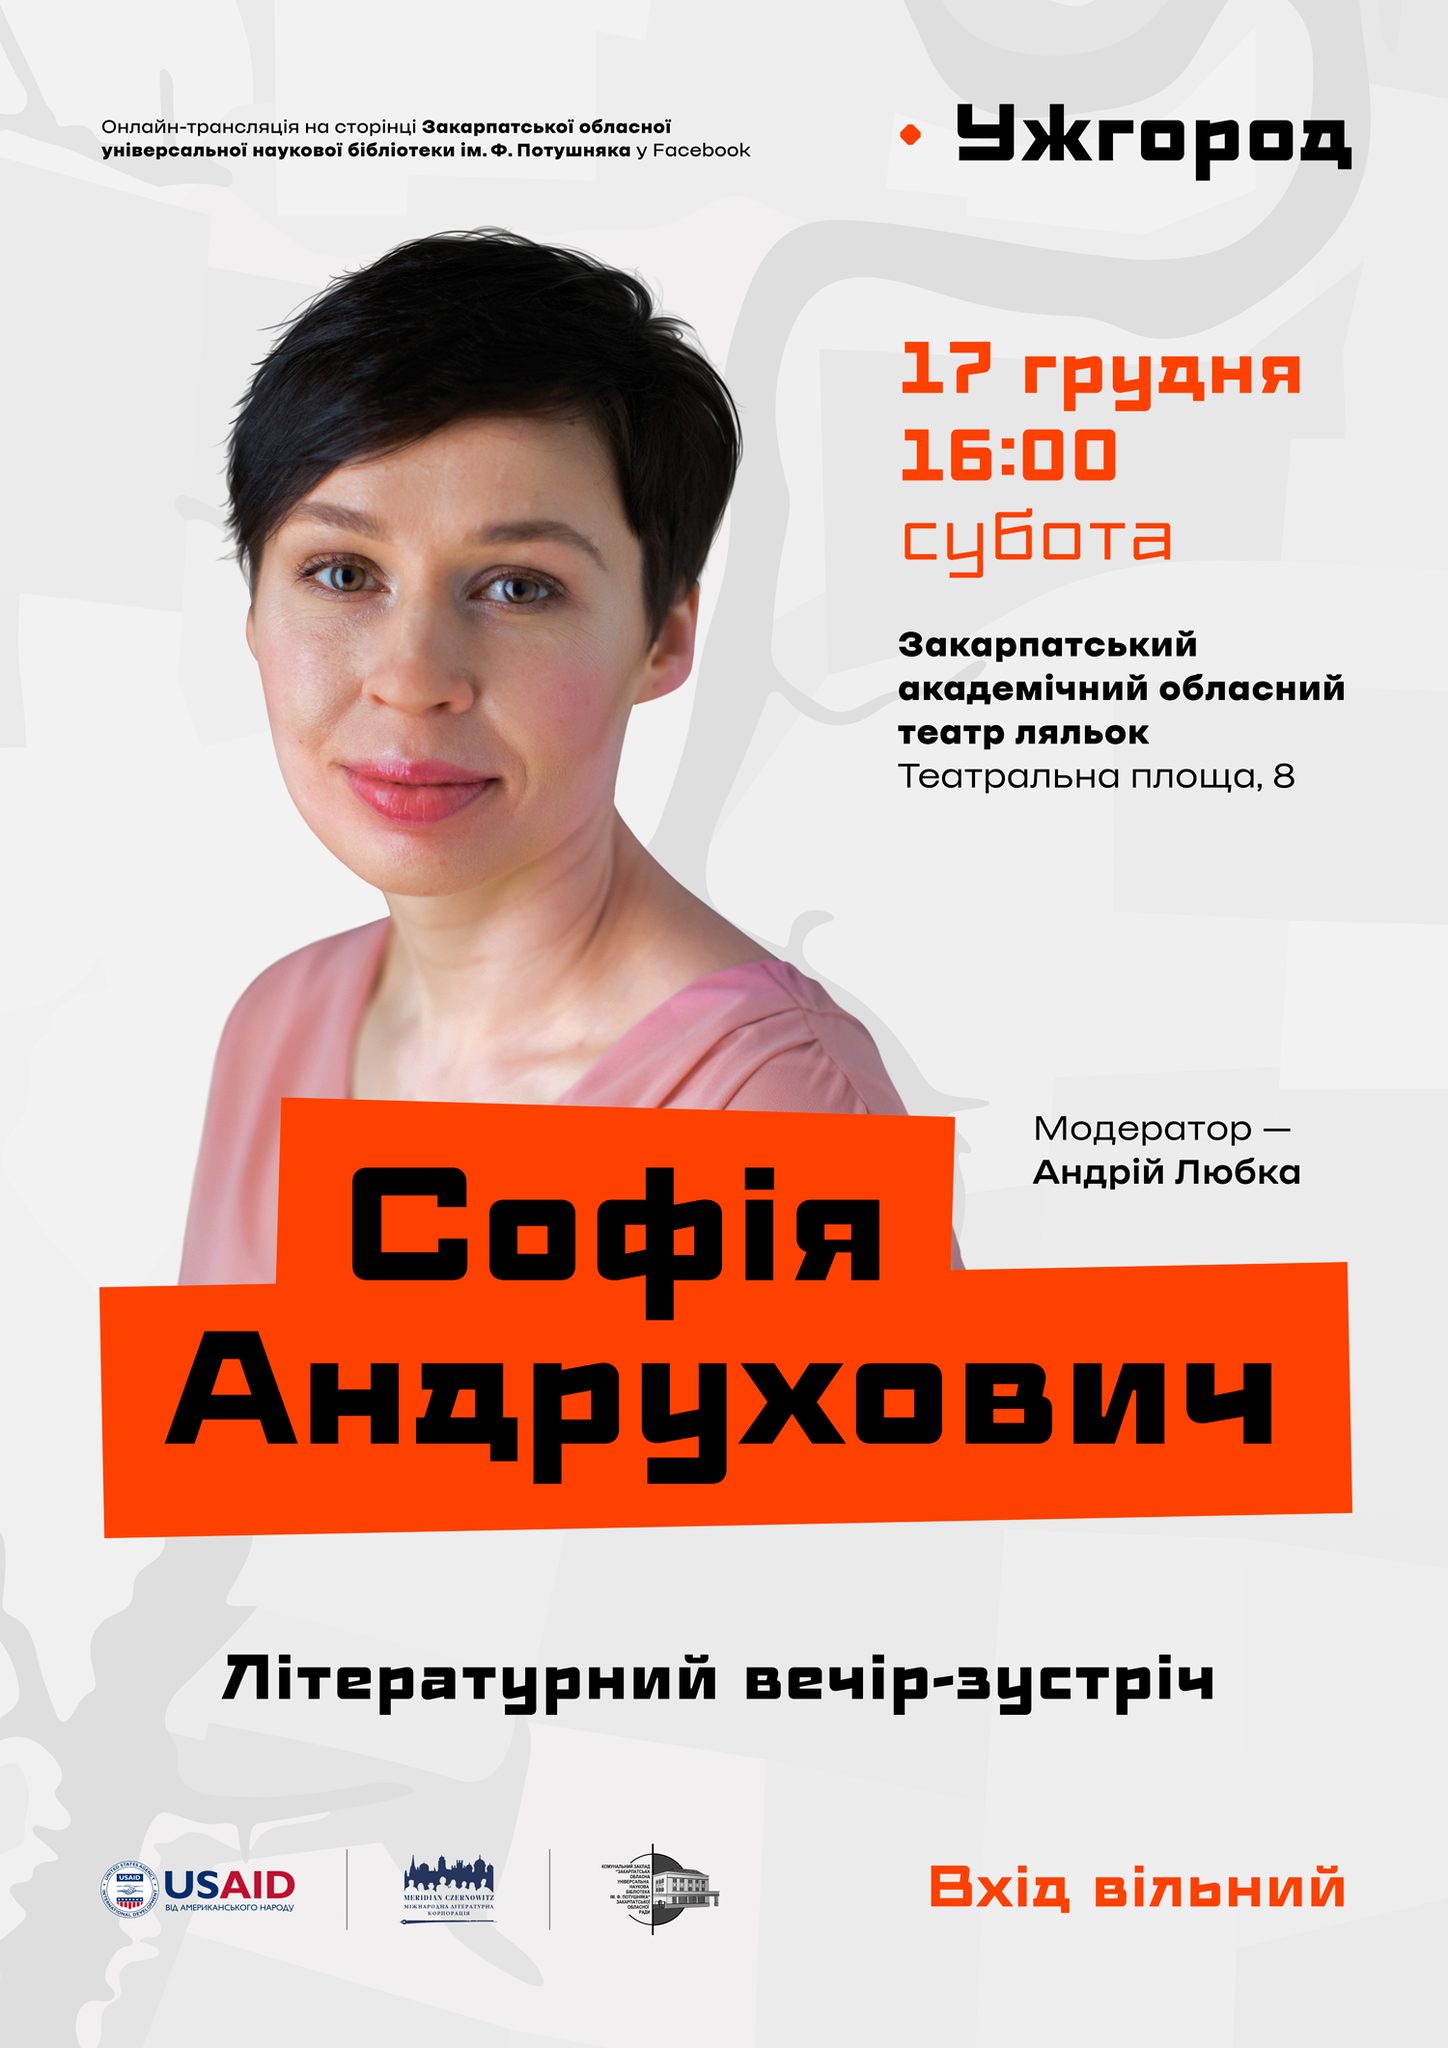 В Ужгороді відбудеться творчий вечір української письменниці Софії Андрухович